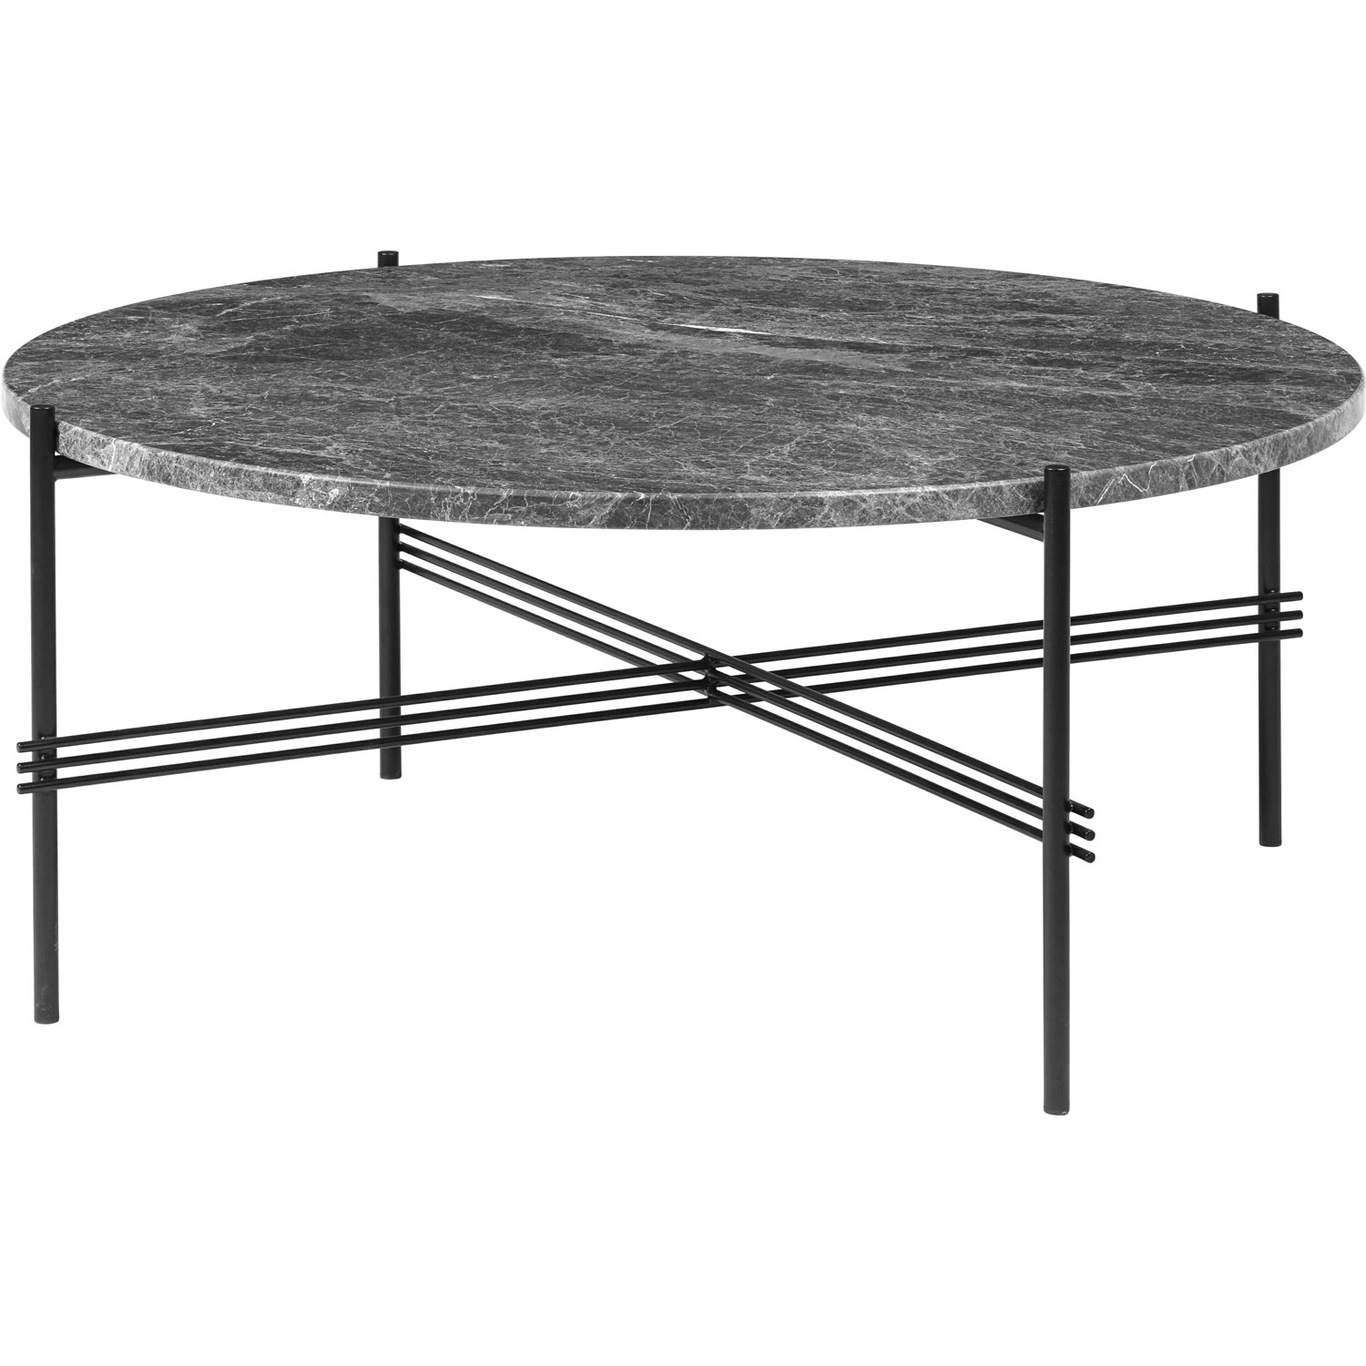 TS Coffee Table 80 cm, Black / Grey Emperador marble